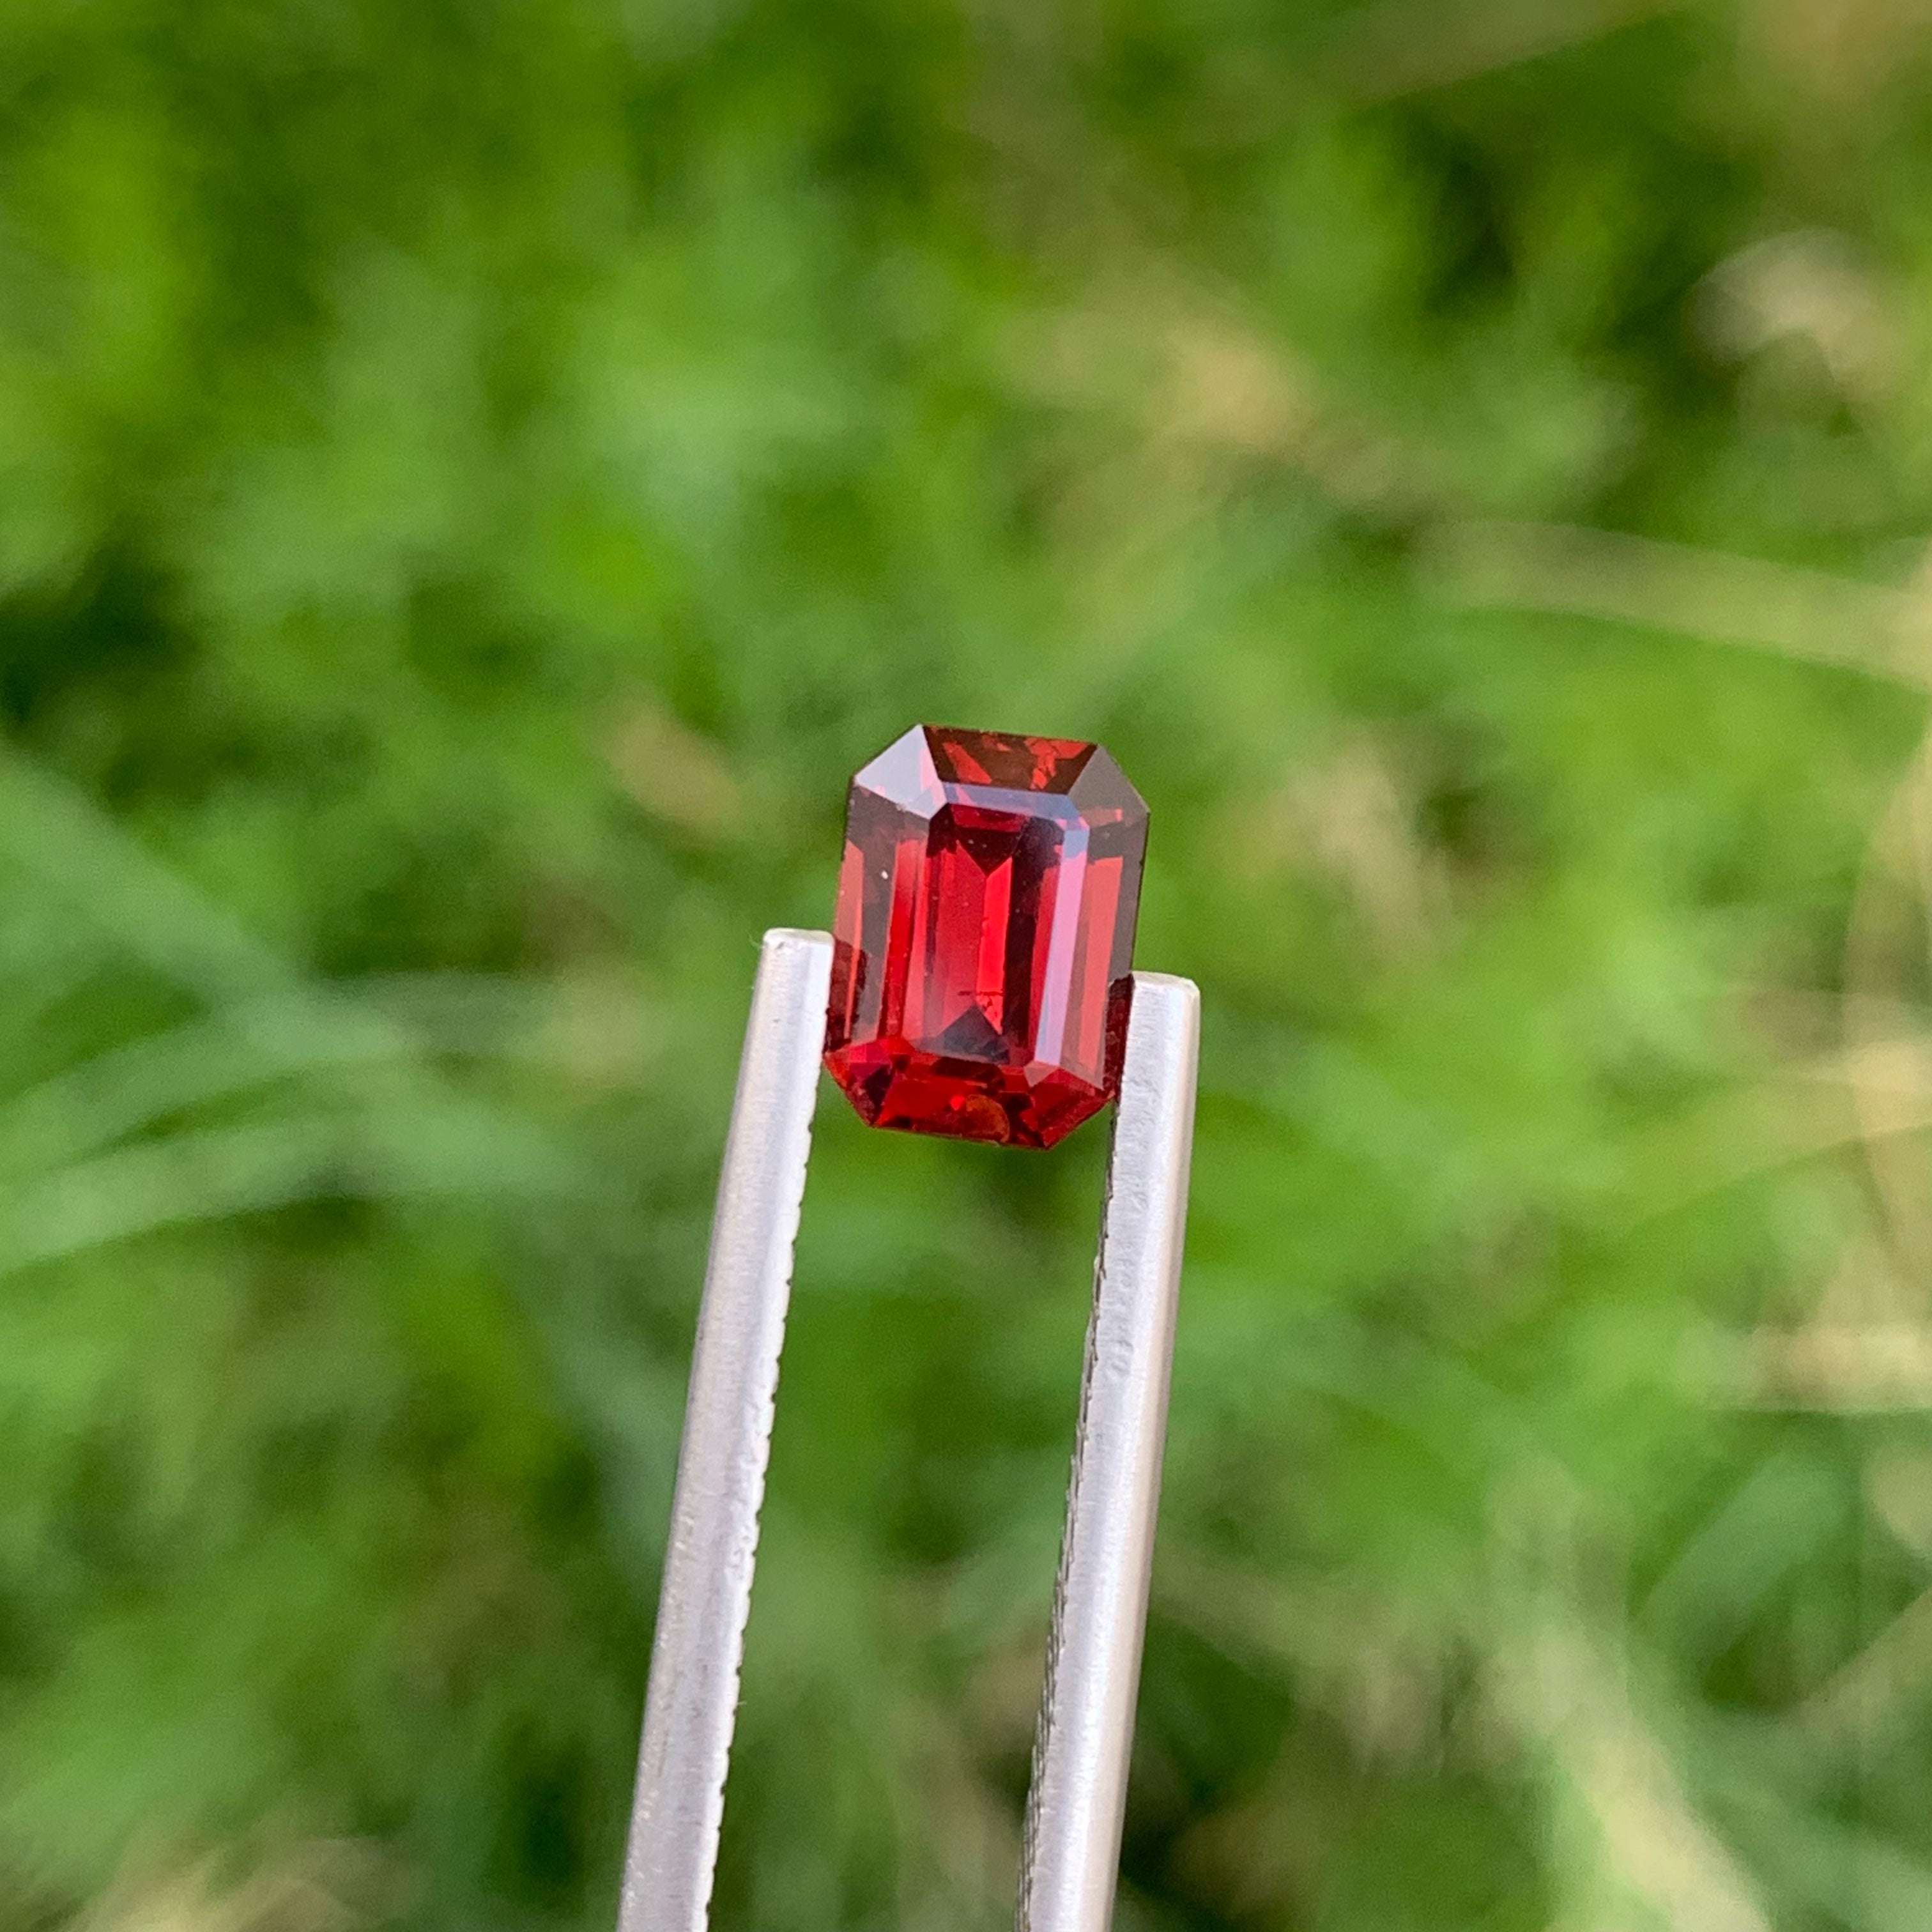 Extraordinary Red Rhodolite Garnet 1.80 carats Emerald Cut Madagascar's Gemstone